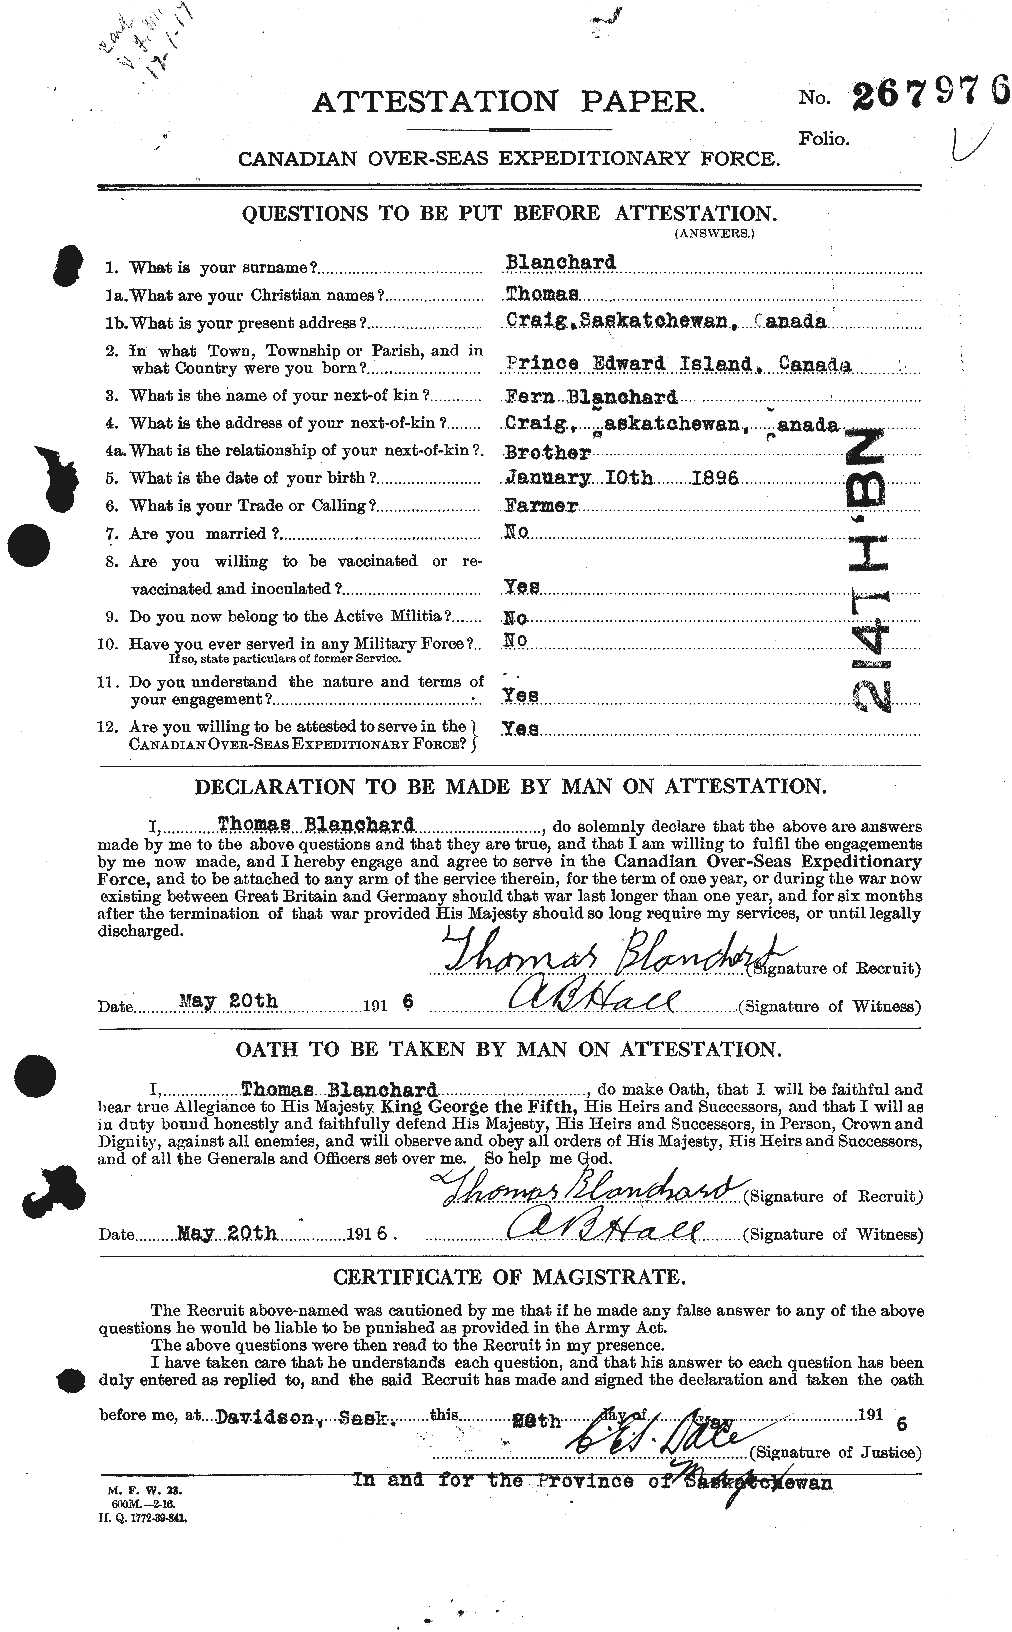 Dossiers du Personnel de la Première Guerre mondiale - CEC 240465a